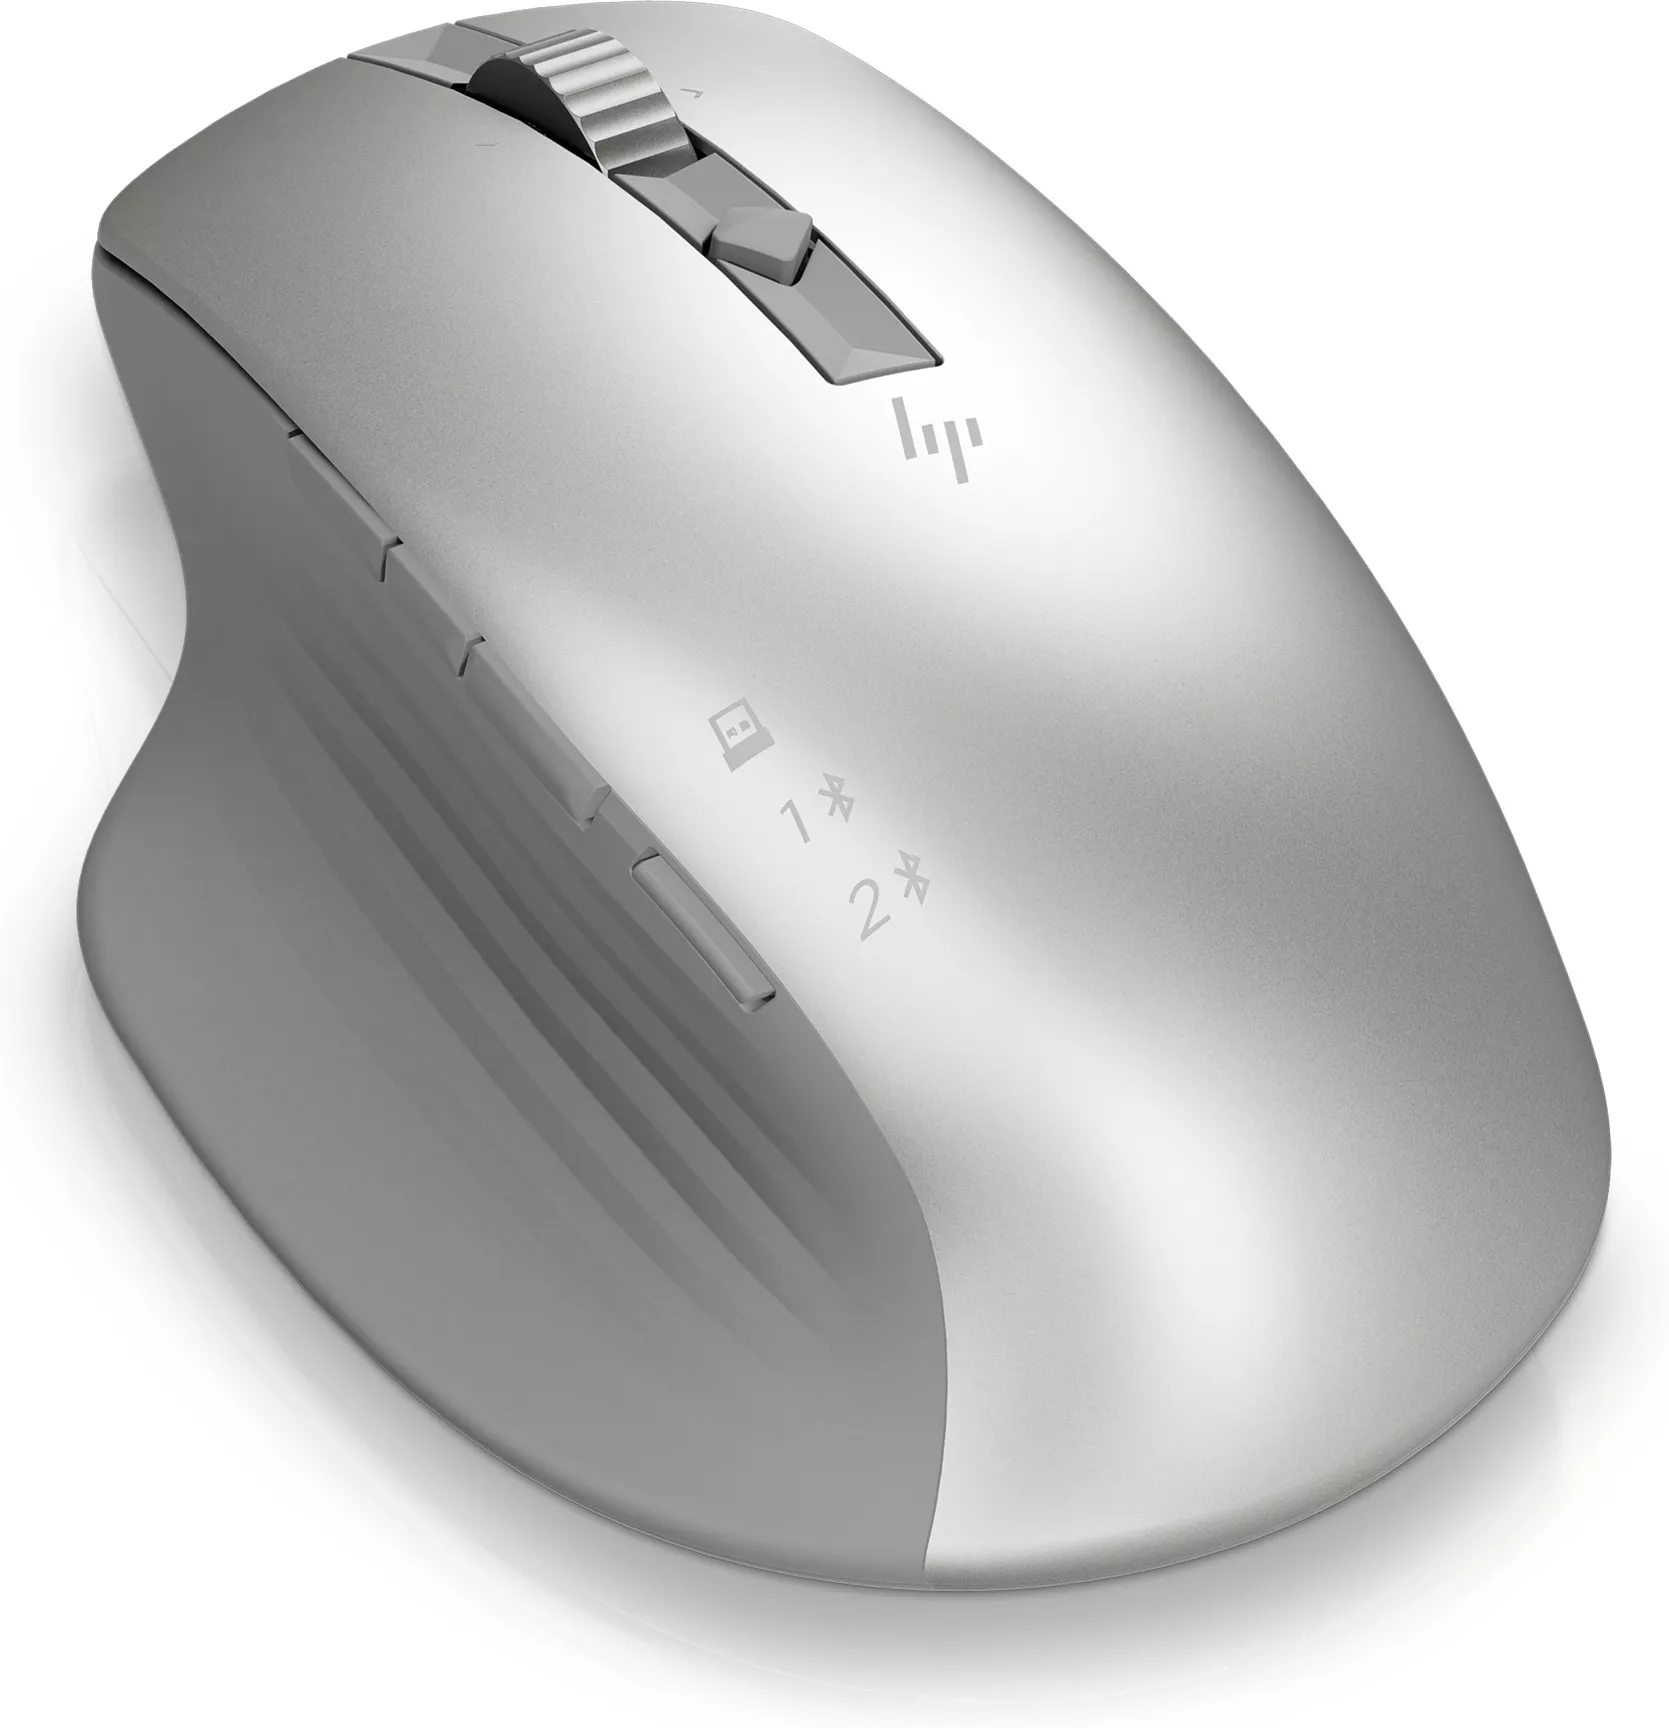 Vente HP Creator 930 SLV WRLS Mouse HP au meilleur prix - visuel 2